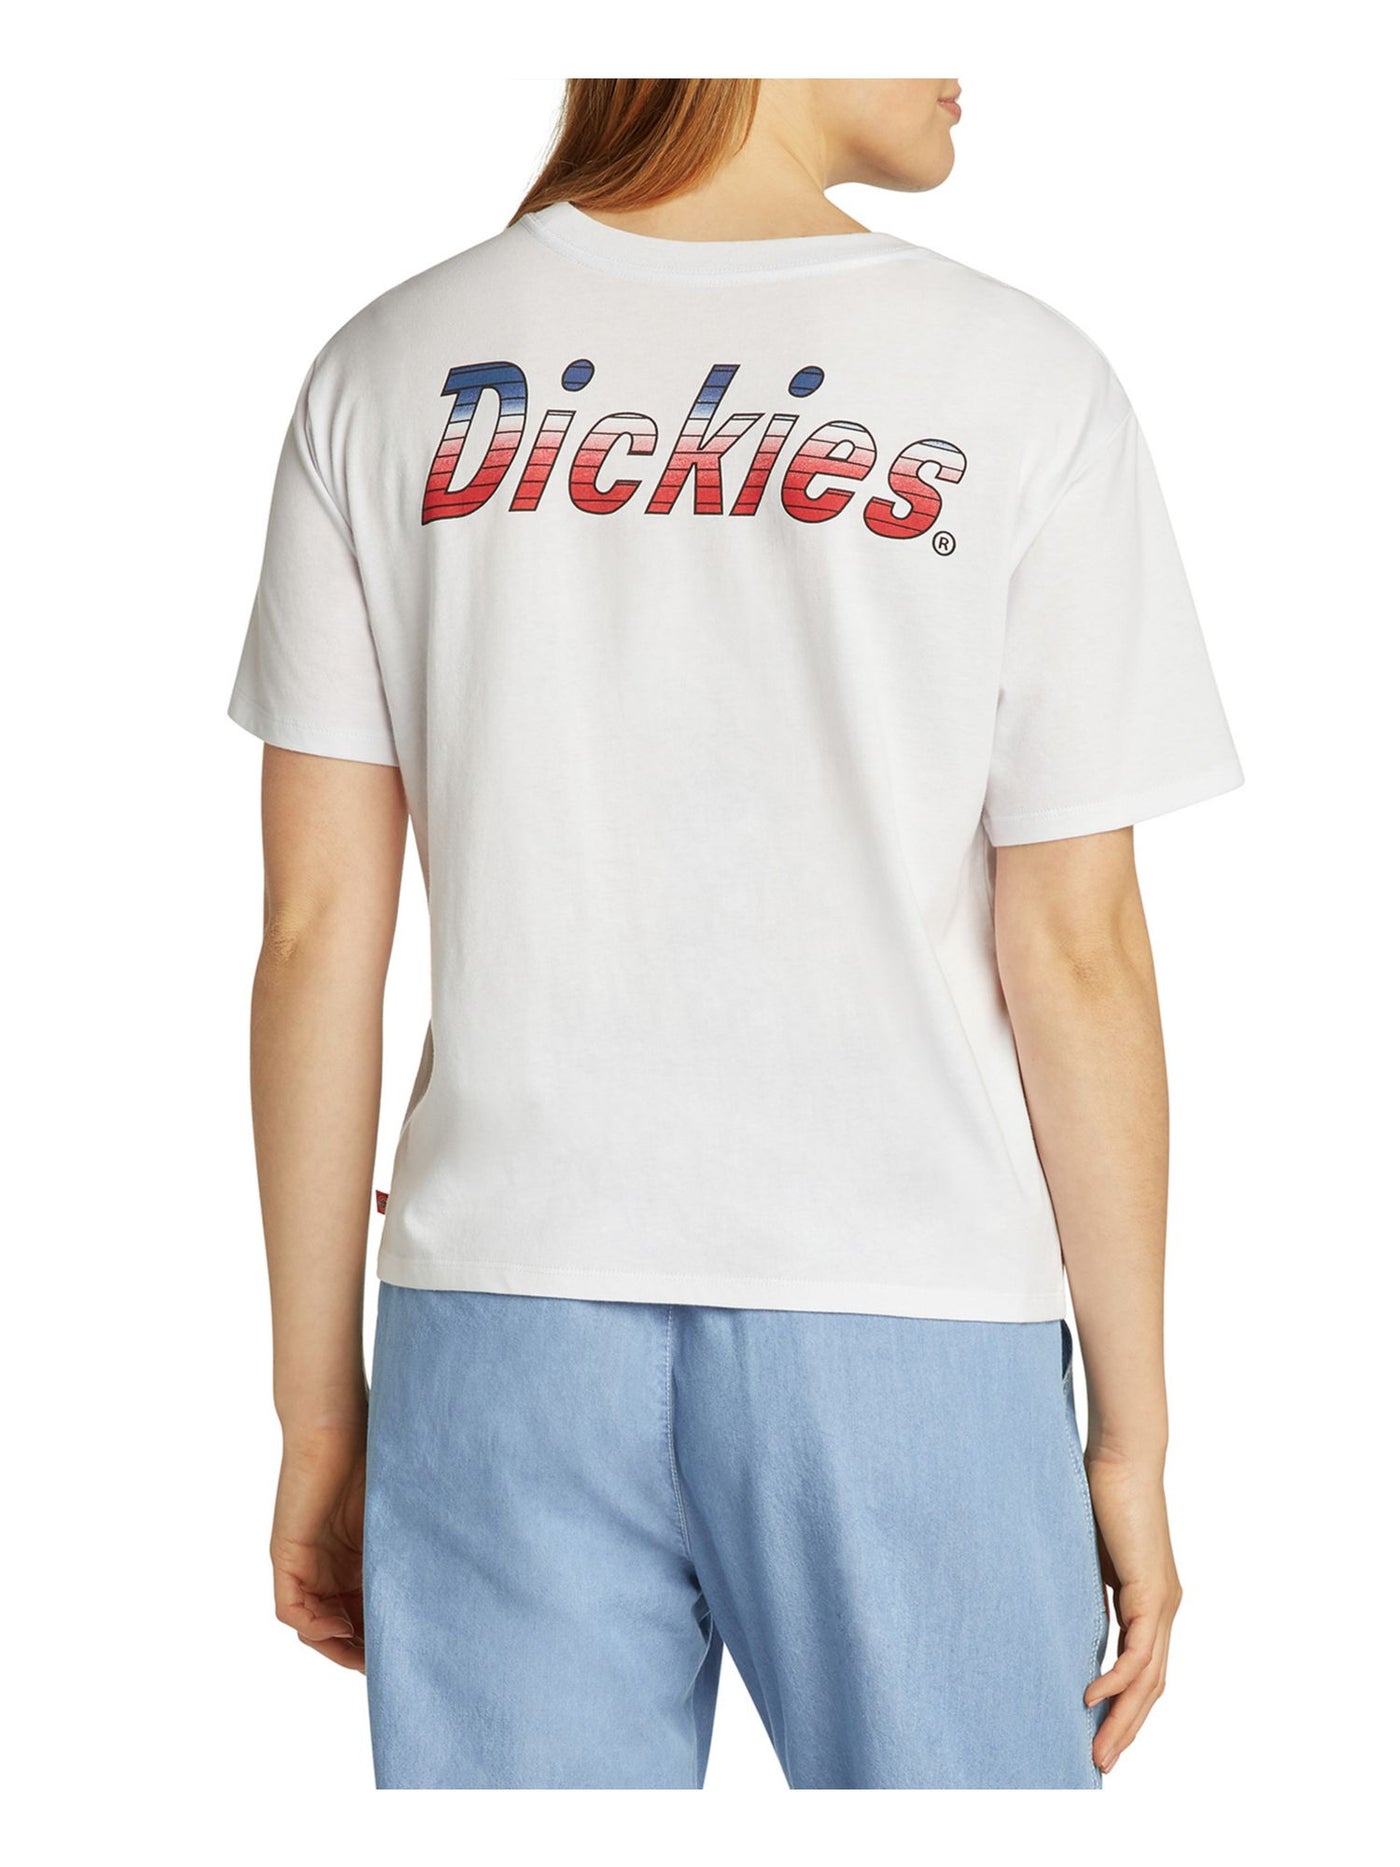 DICKIES Womens White Logo Graphic Short Sleeve Crew Neck T-Shirt Juniors XS